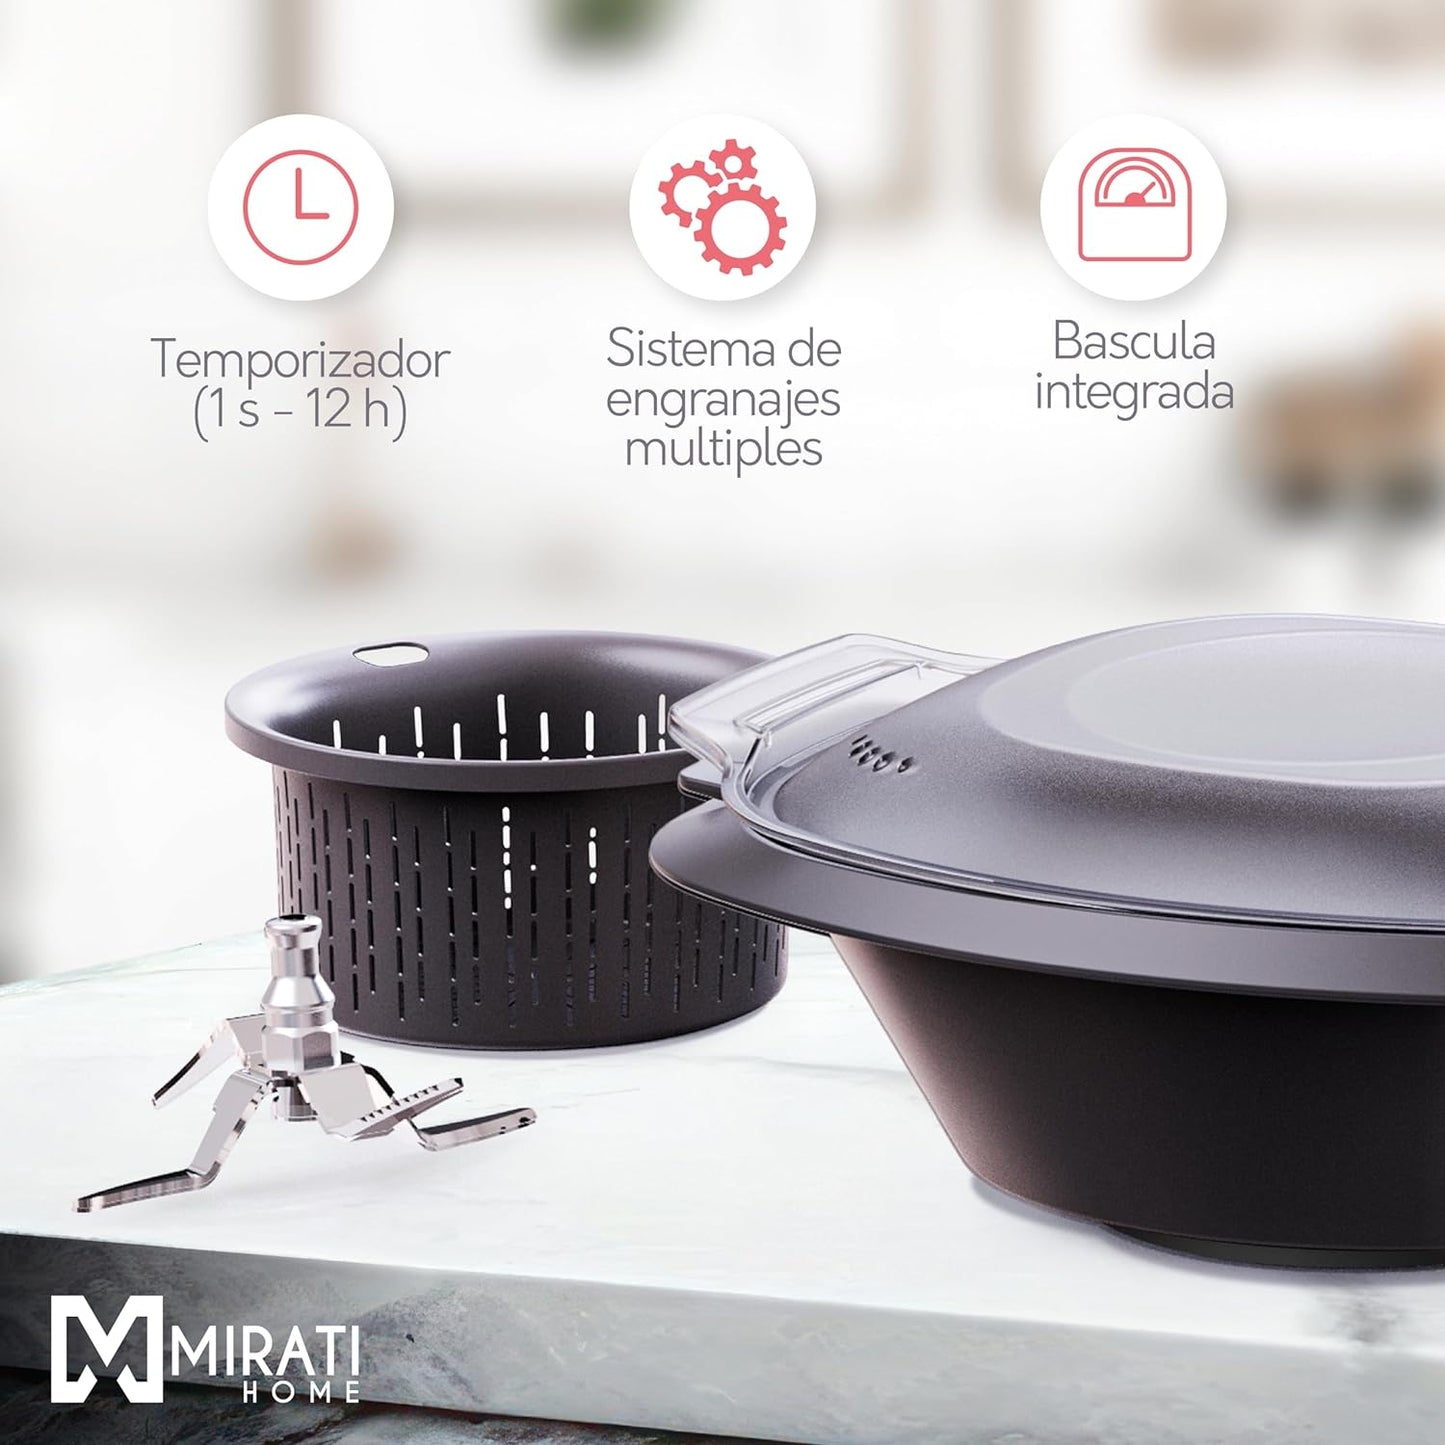 Robot de cocina Mirati Home - 16 funciones, 700 recetas